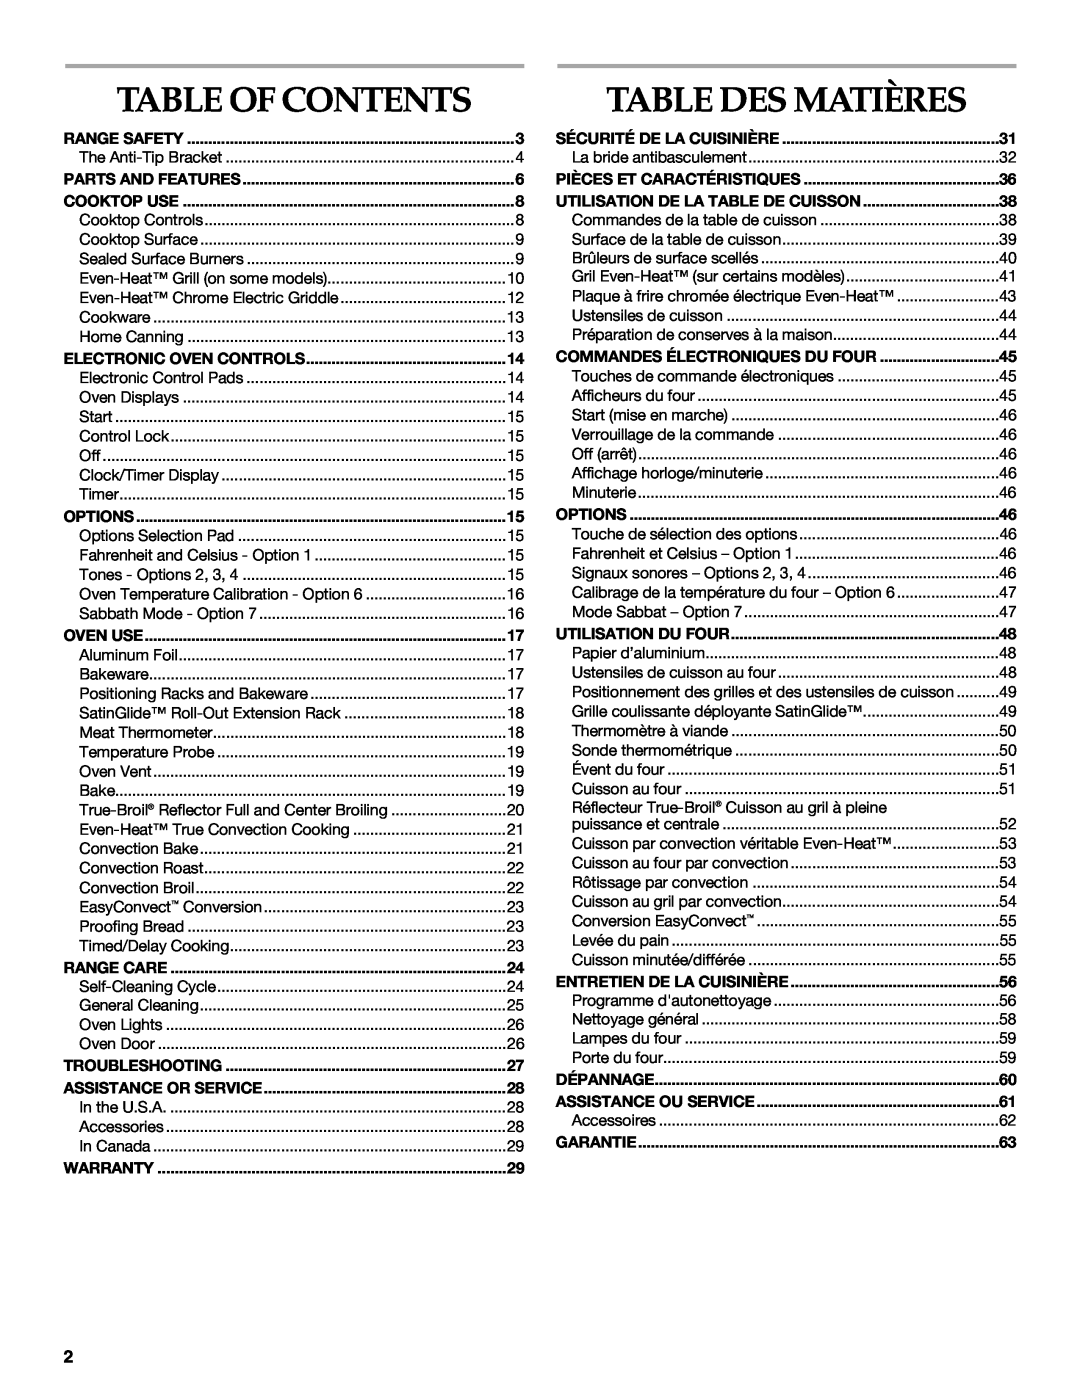 KitchenAid KDRS483, KDRS467, KDRS463, KDRS407, KDRS462 manual Table Des Matières, Table Of Contents 